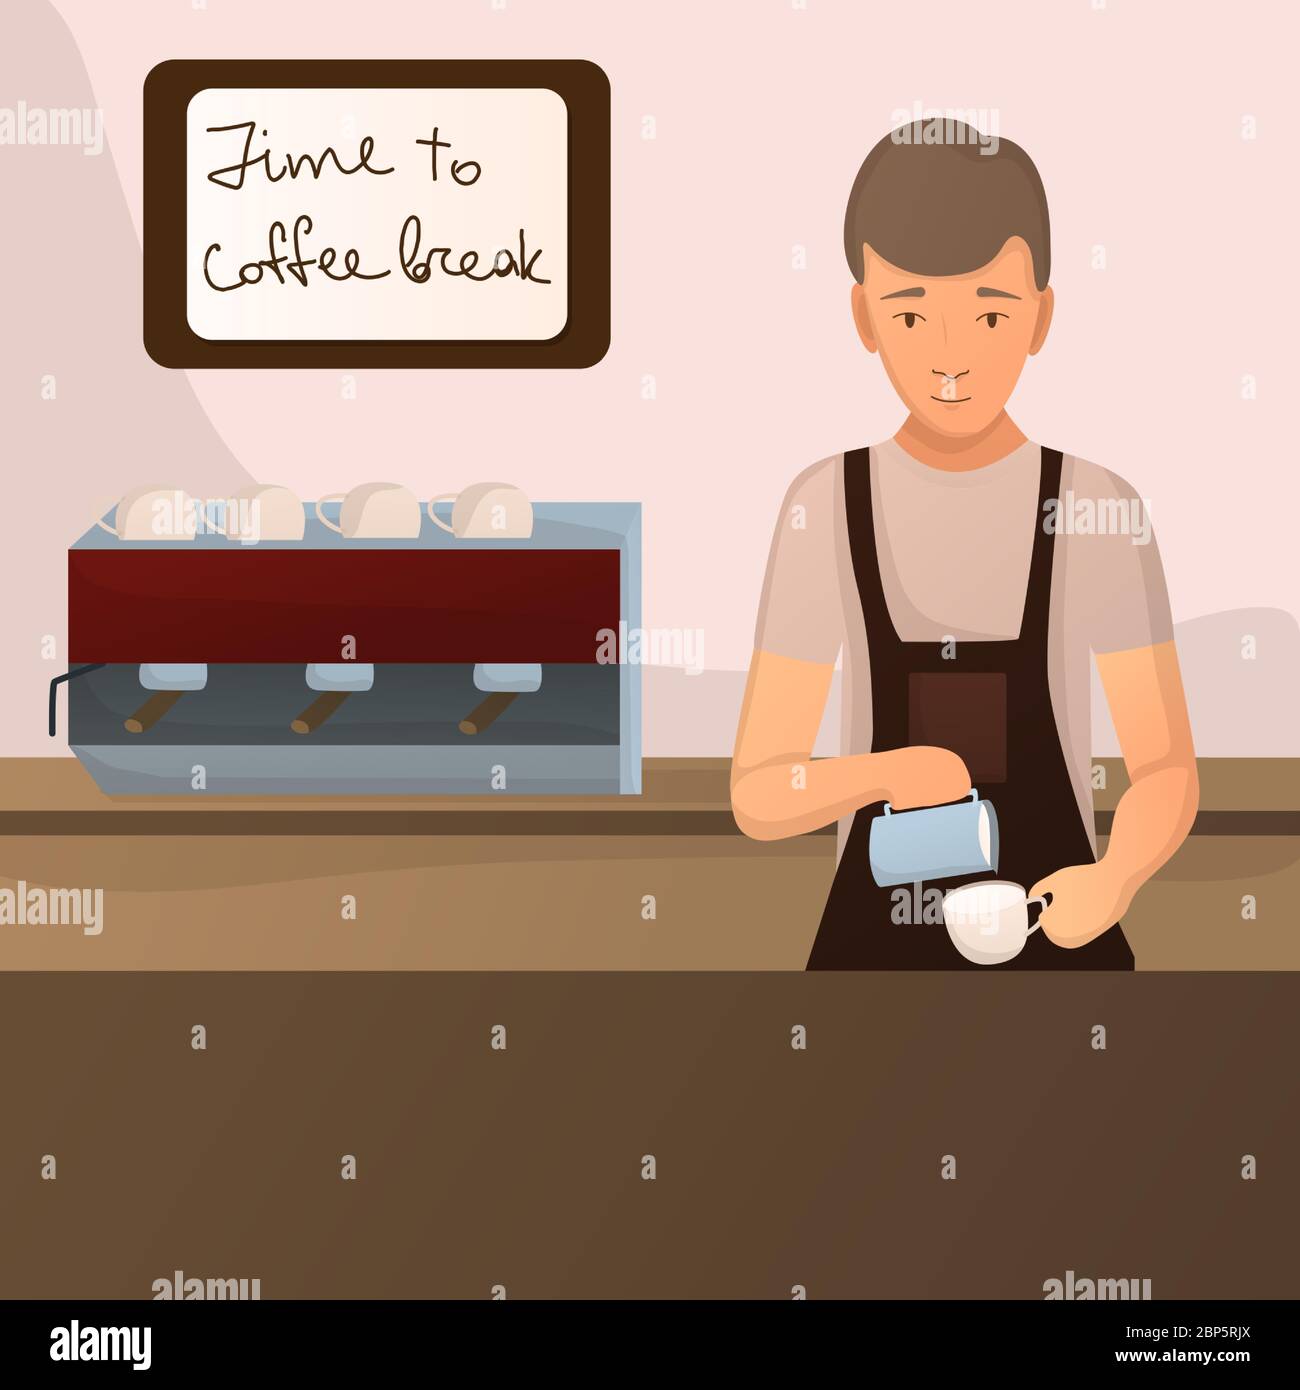 Barista brauen Kaffee für Lifestyle-Design. Männlich Cartoon Charakter machen Cappuccino. Cafe Interieur, Zitat - Zeit, um Kaffeepause an der Wand im Rahmen. Stock Vektor